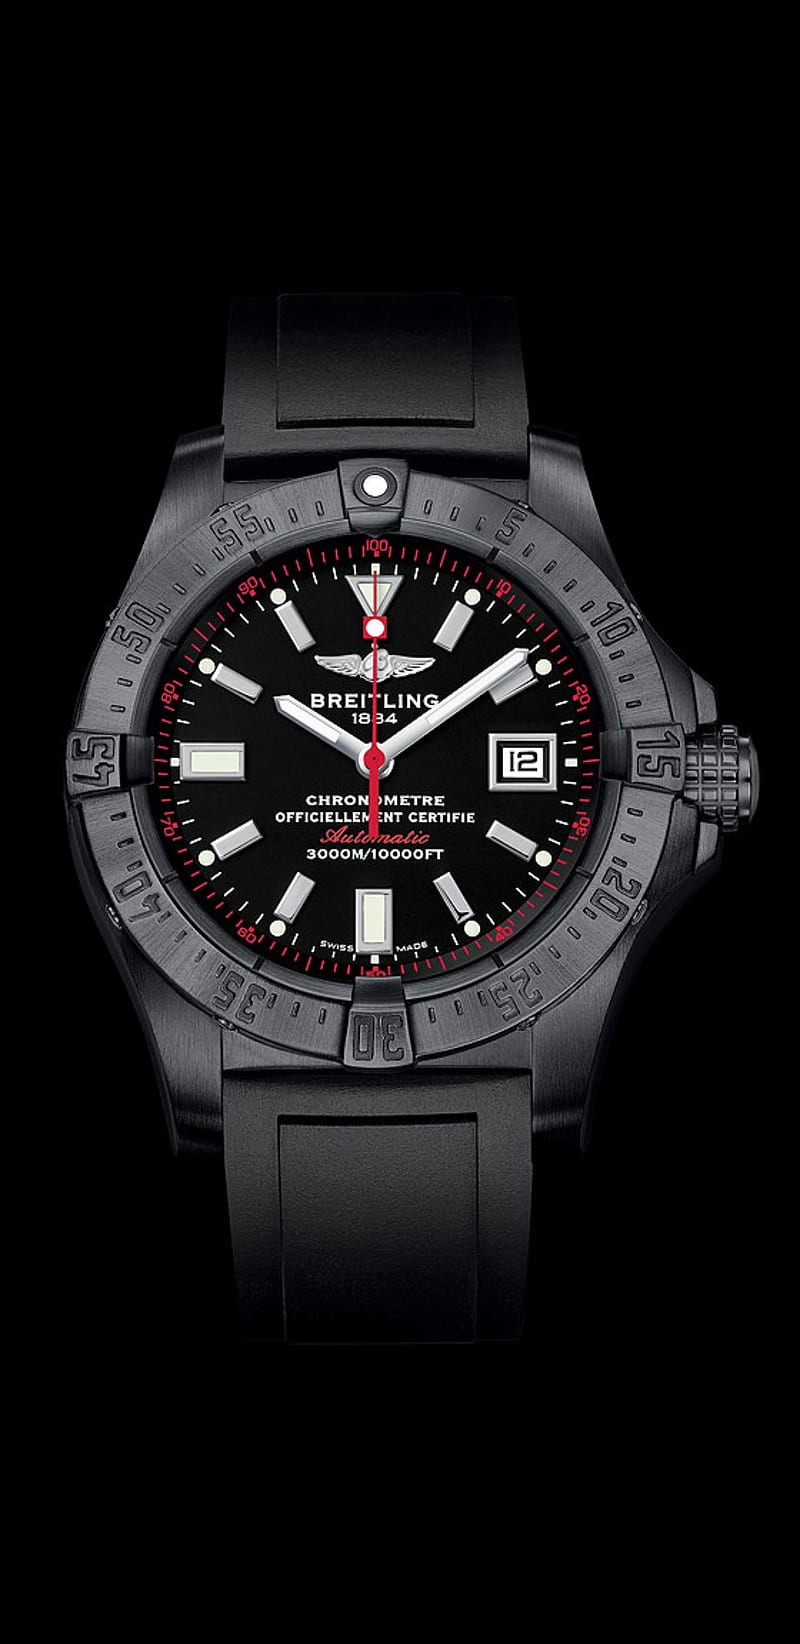 Photos Breitling Avenger Swiss Air Force Team Watch Clock